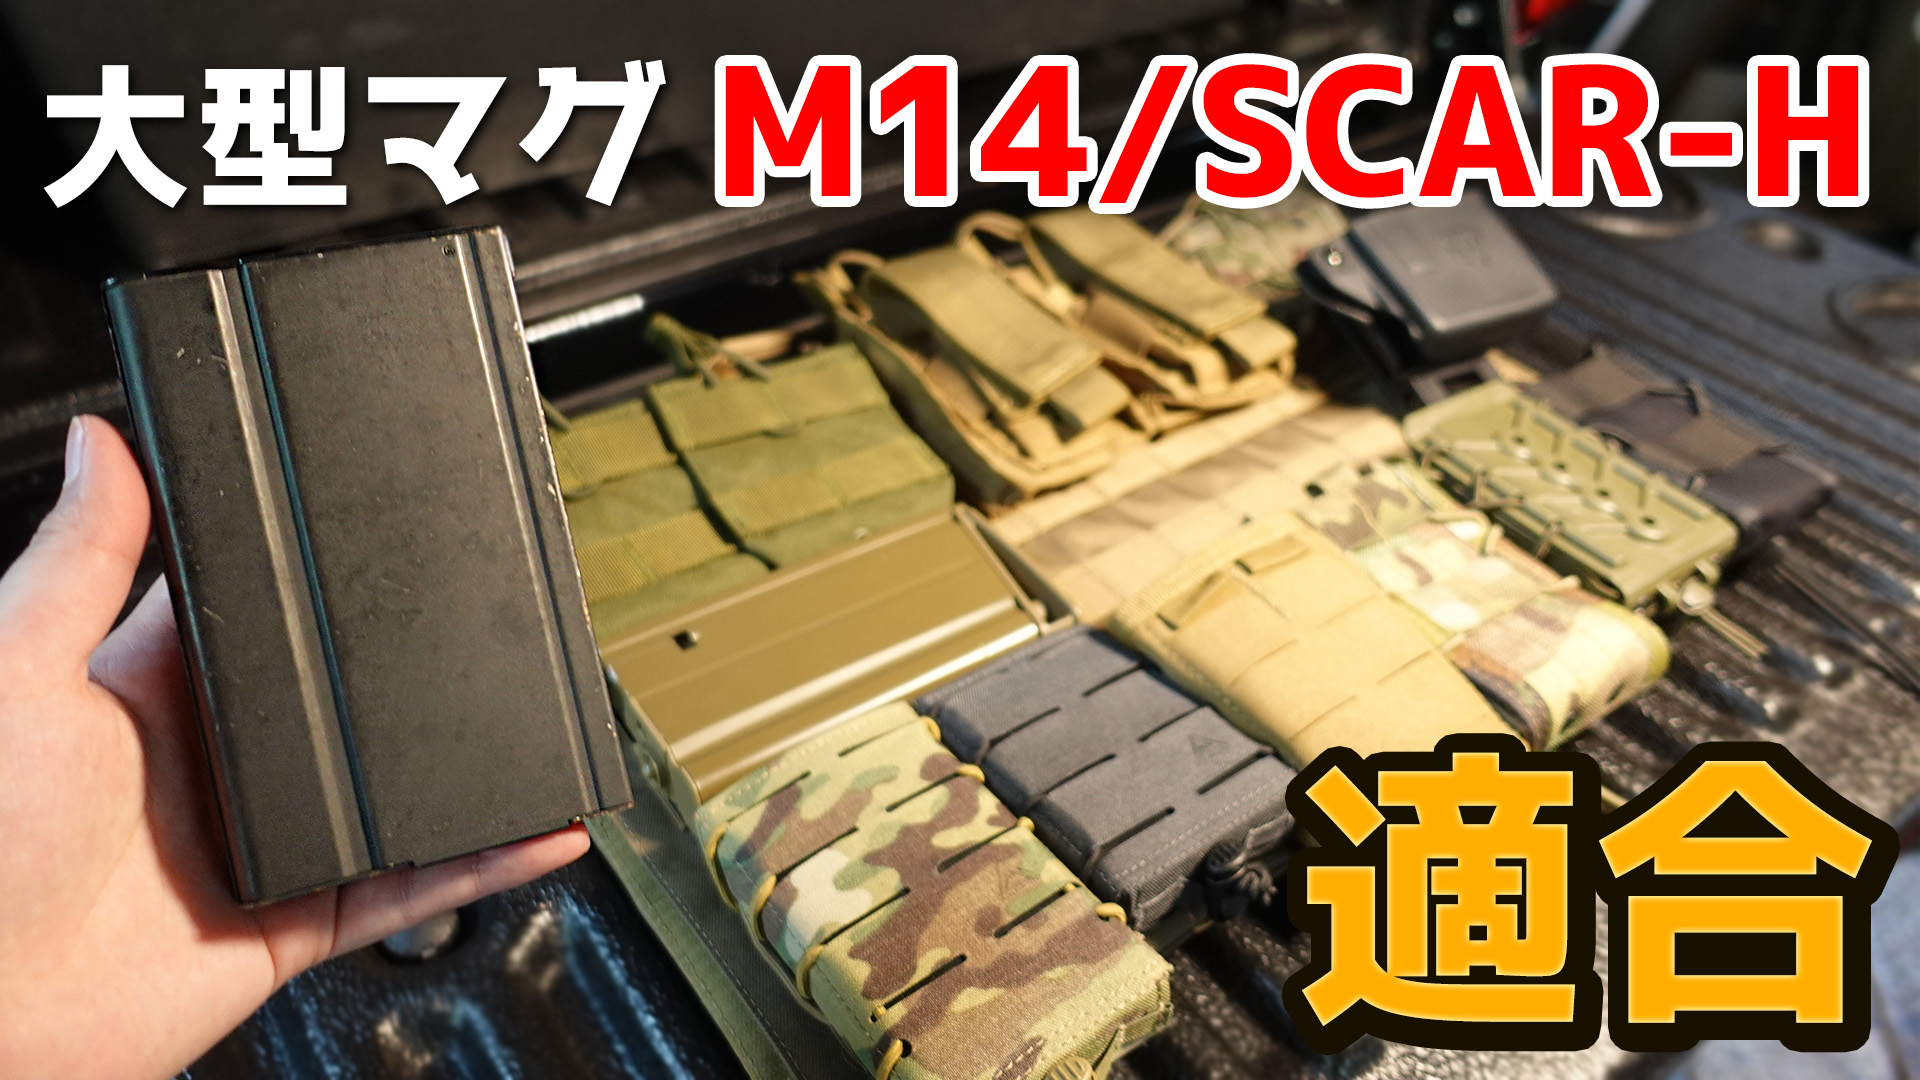 M14/SCAR-Hを収納可能なマグポーチを比較する動画を公開しました！